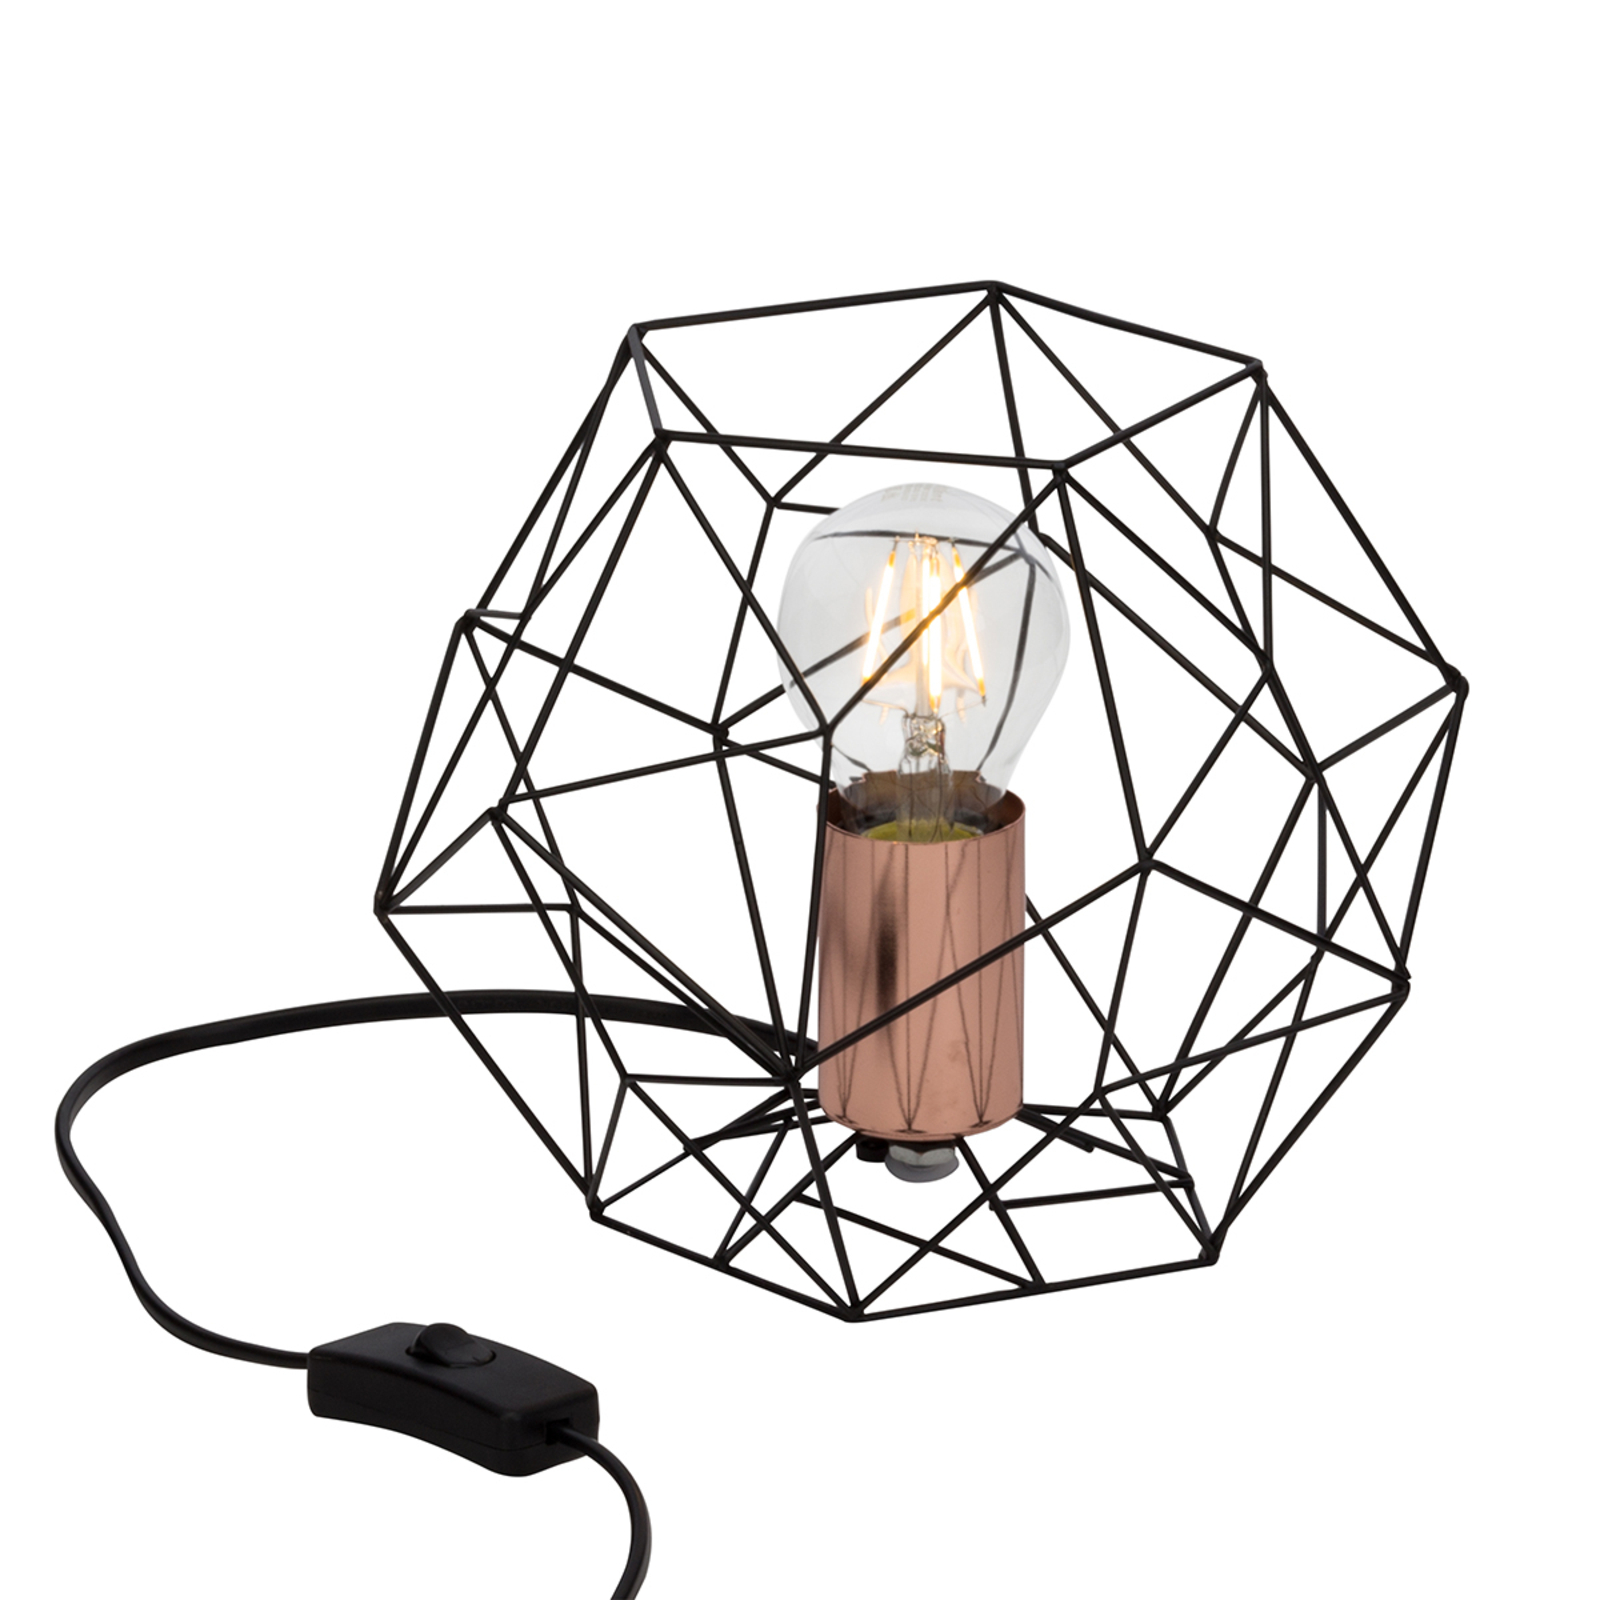 Lampa stołowa Synergy o interesującym kształcie